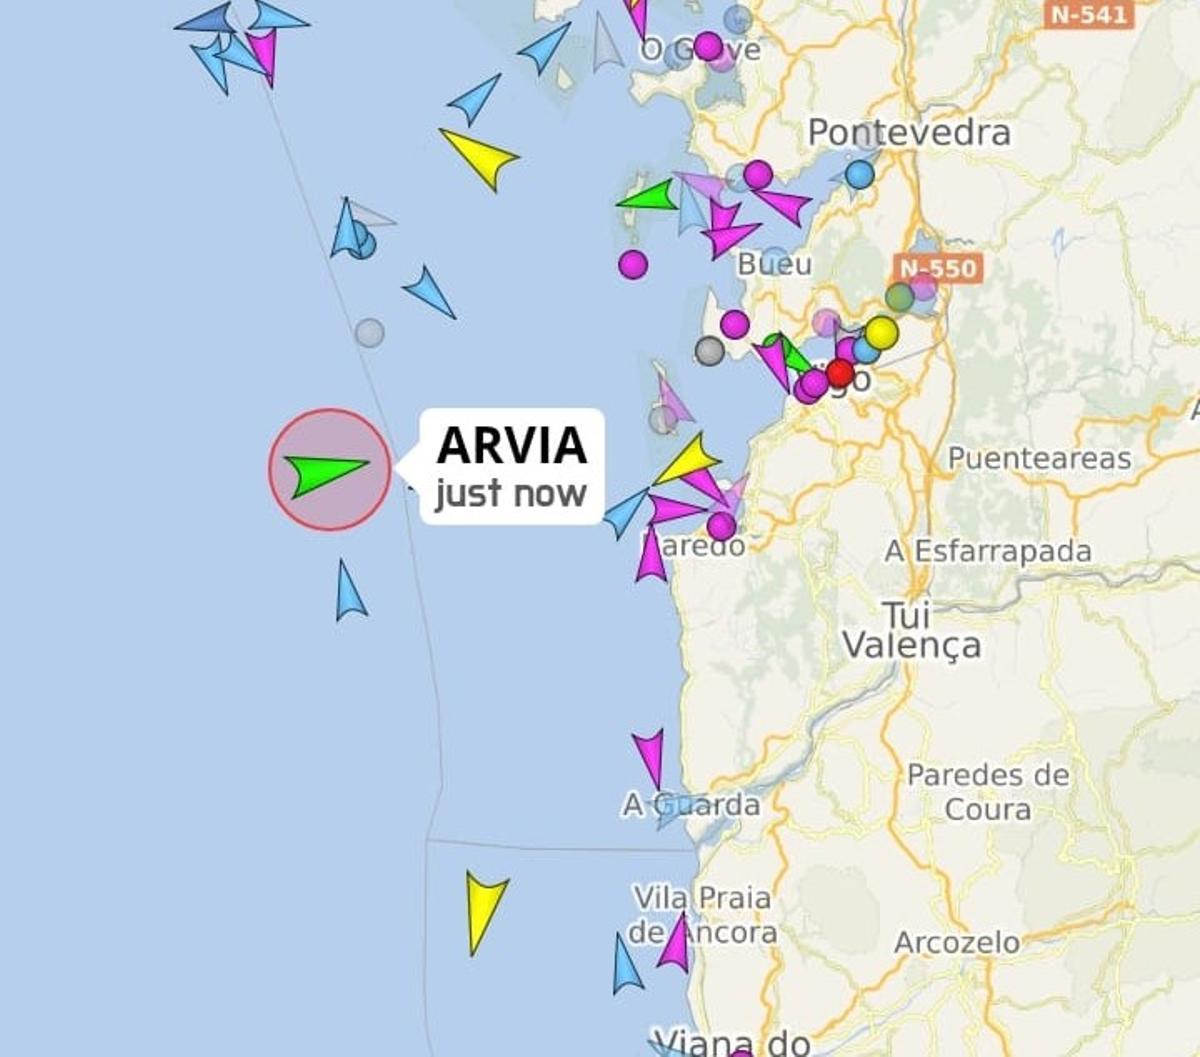 Mapa de tráfico marítimo que señala la posición del Arvia hacia la costa sur de Galicia.